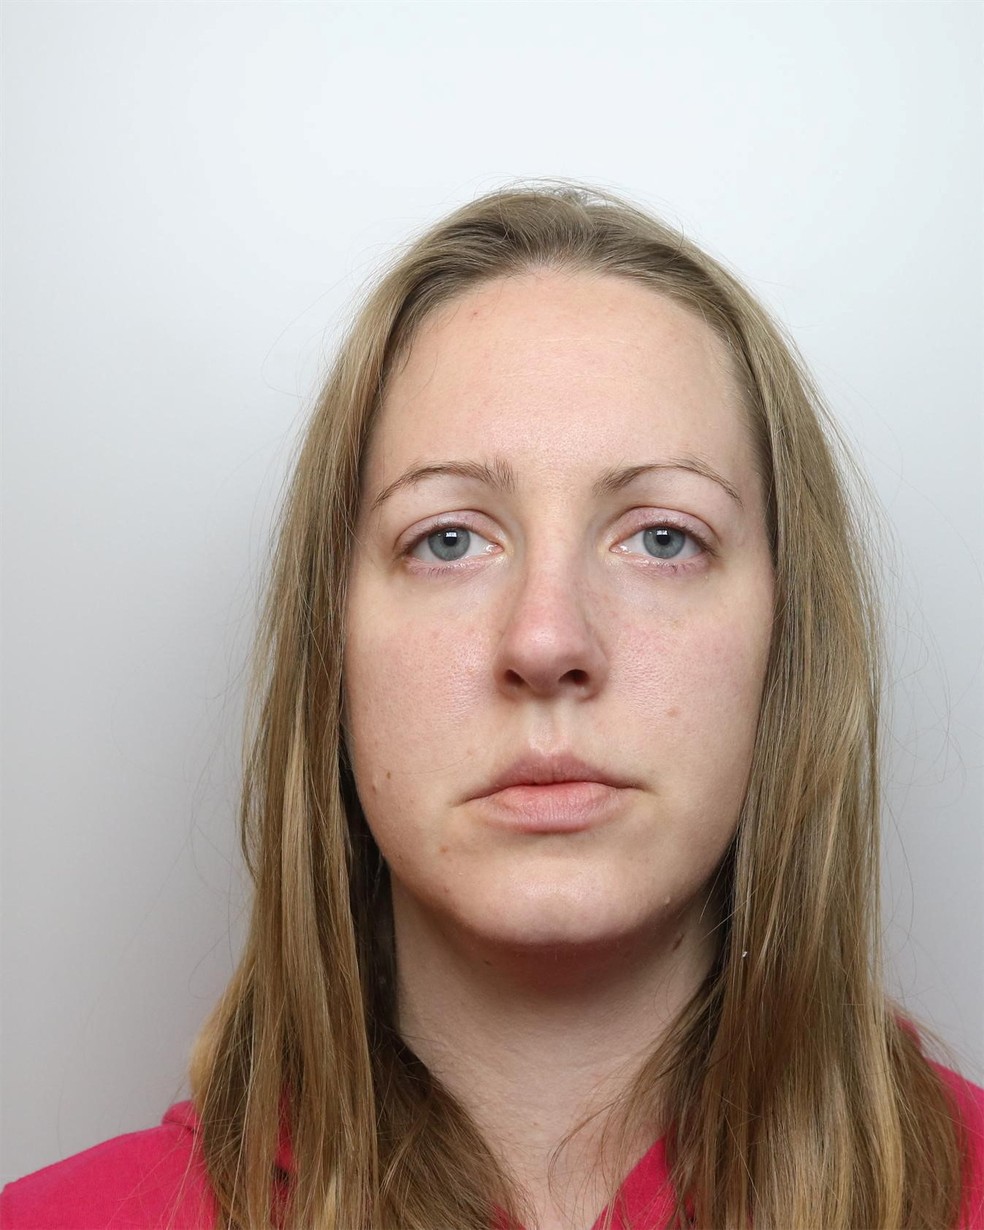 Lucy Letby, enfermeira acusada pelo assassinato de 7 bebês, em foto de fundo branco — Foto: Cheshire Constabulary/Reprodução via REUTERS